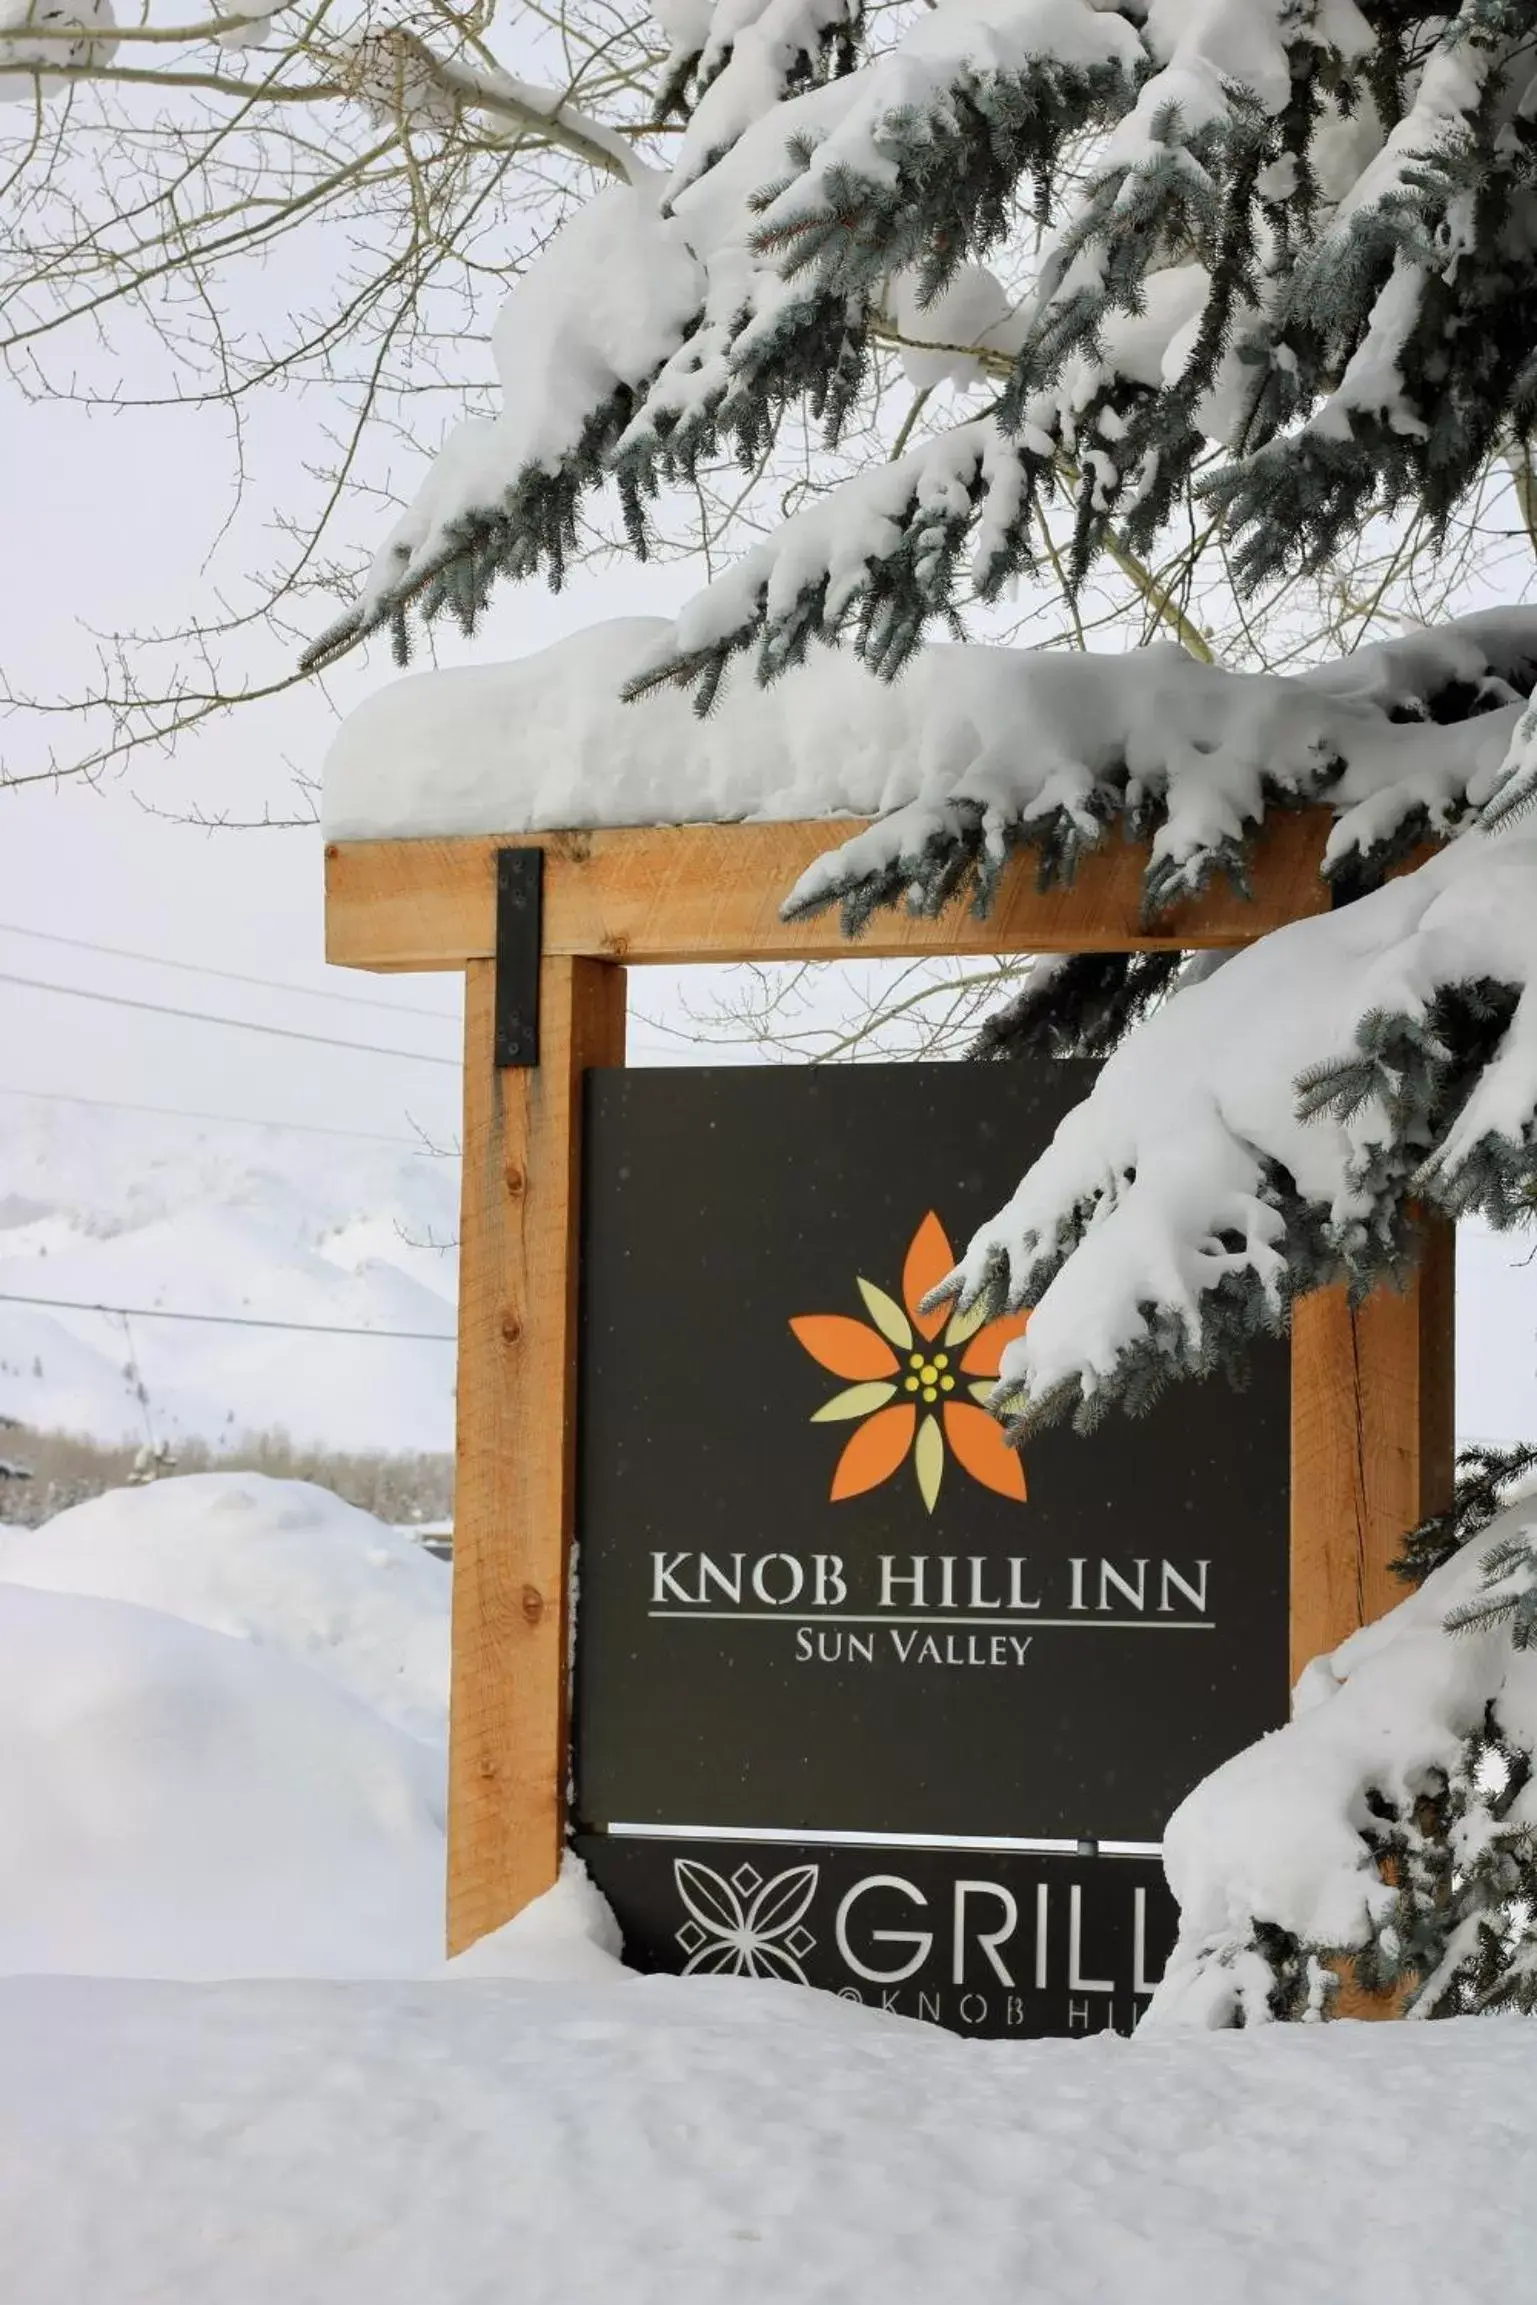 Winter in Knob Hill Inn